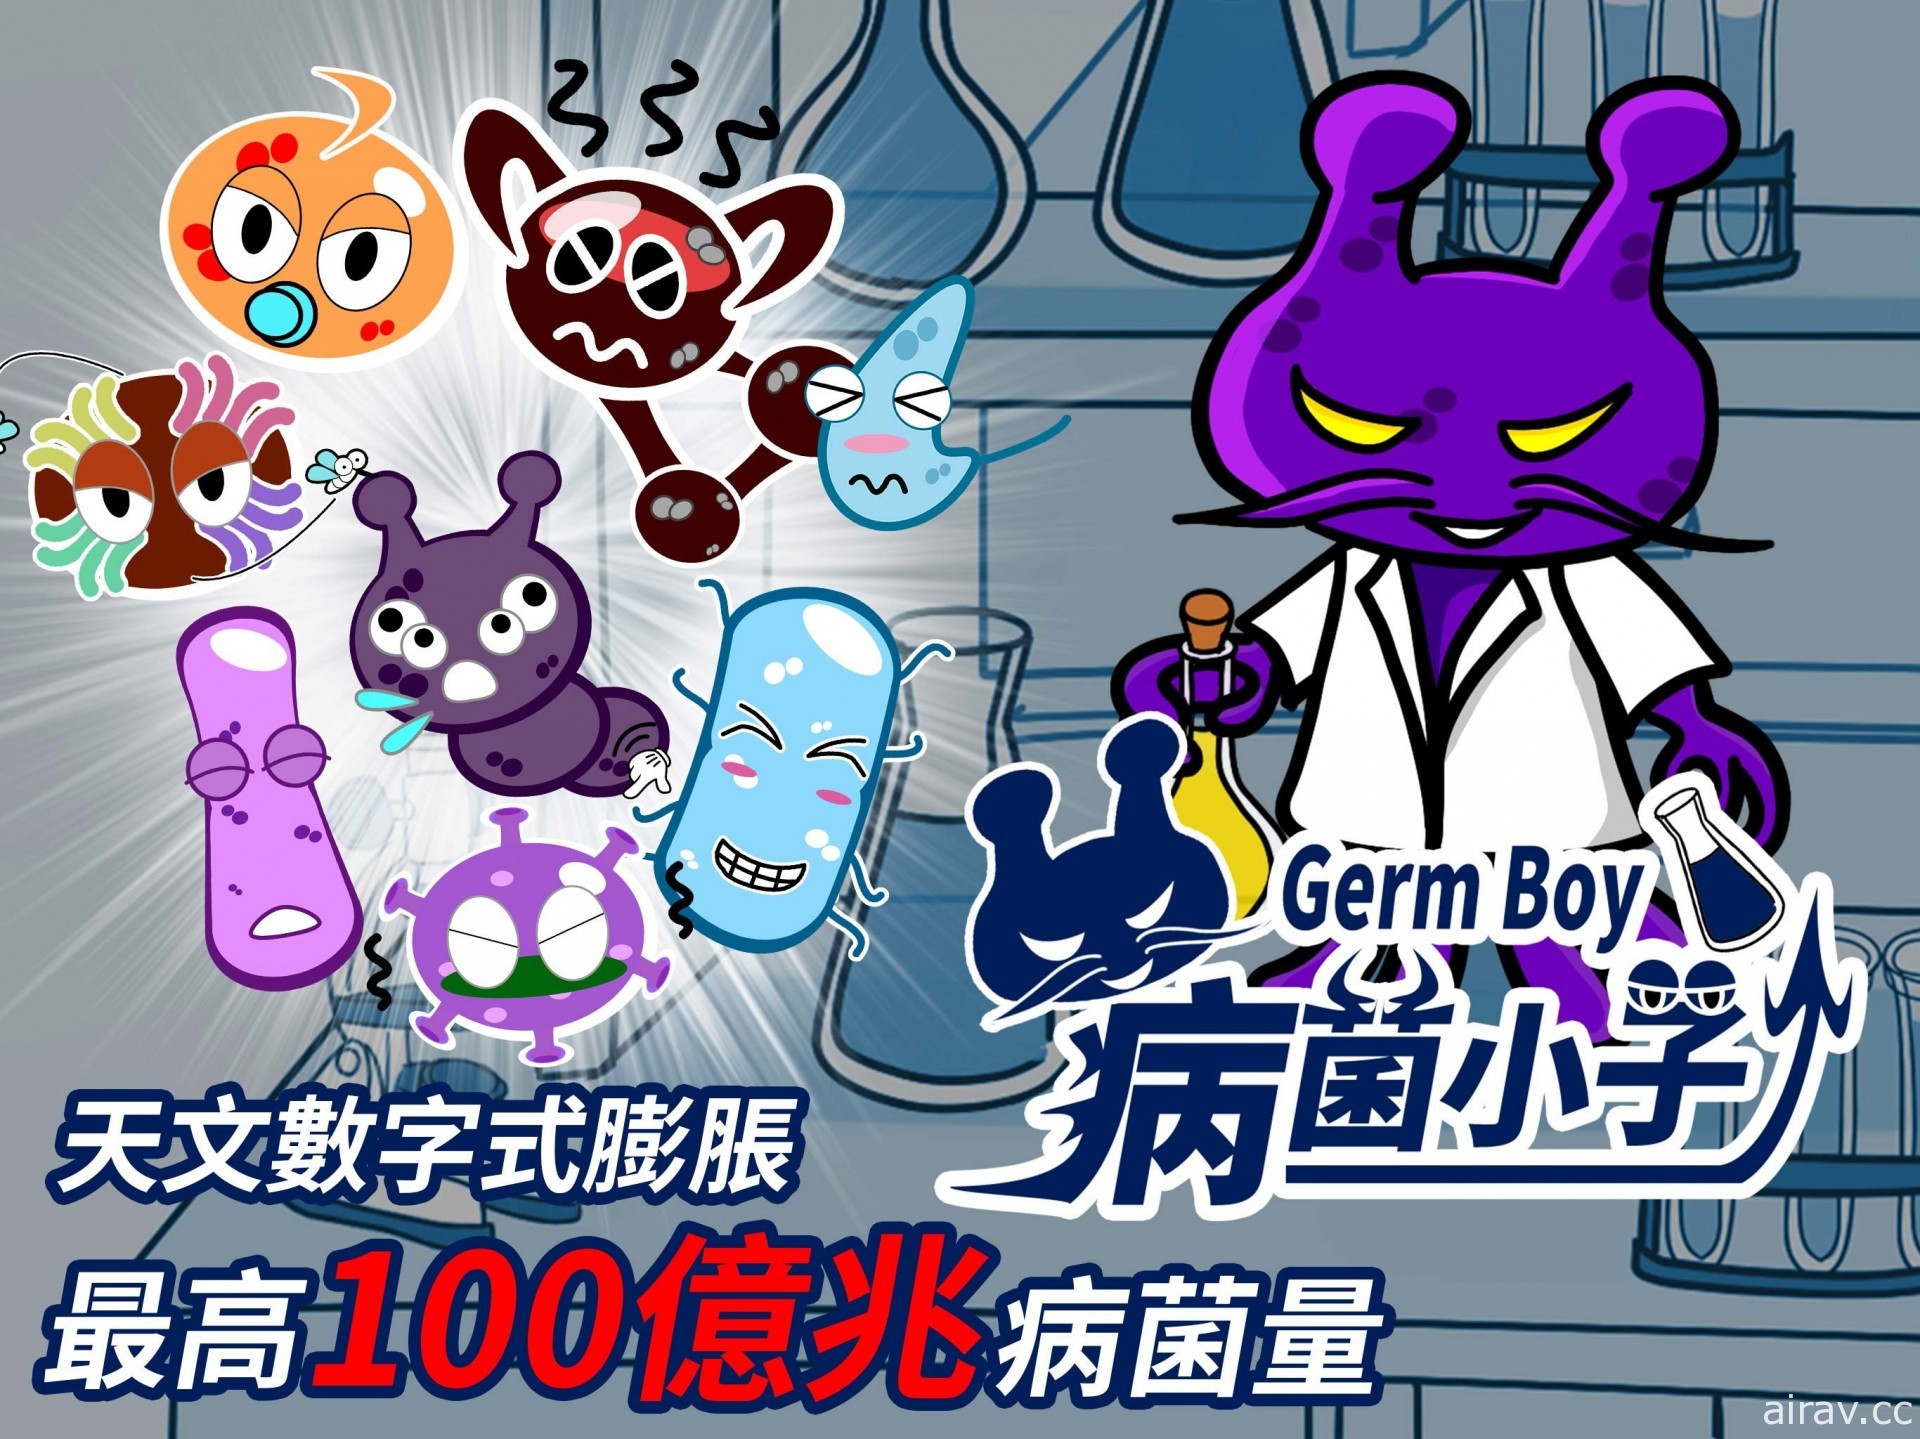 天文數字式膨脹遊戲《GermBoy 病菌小子》GooglePlay 上架 最高 100 億兆病菌量